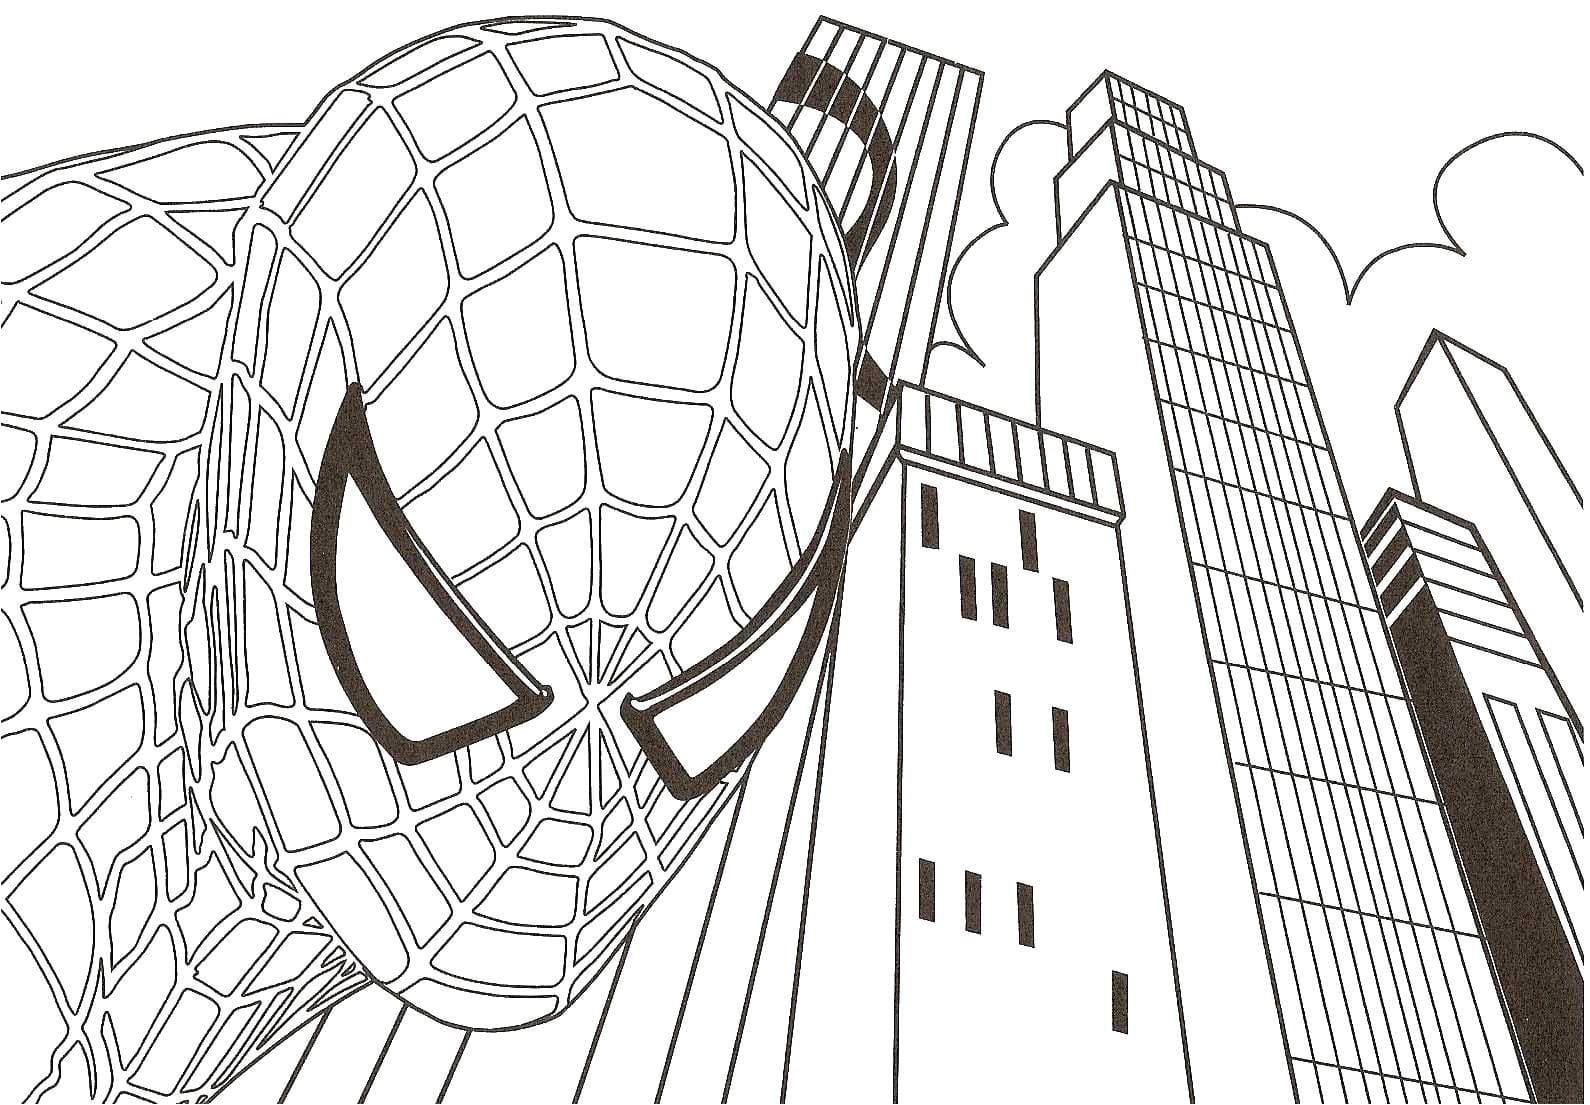 Coloriage Spider Man 3 Ausmalbilder Spiderman Drucken Sie Online Superheld 90 Bilder